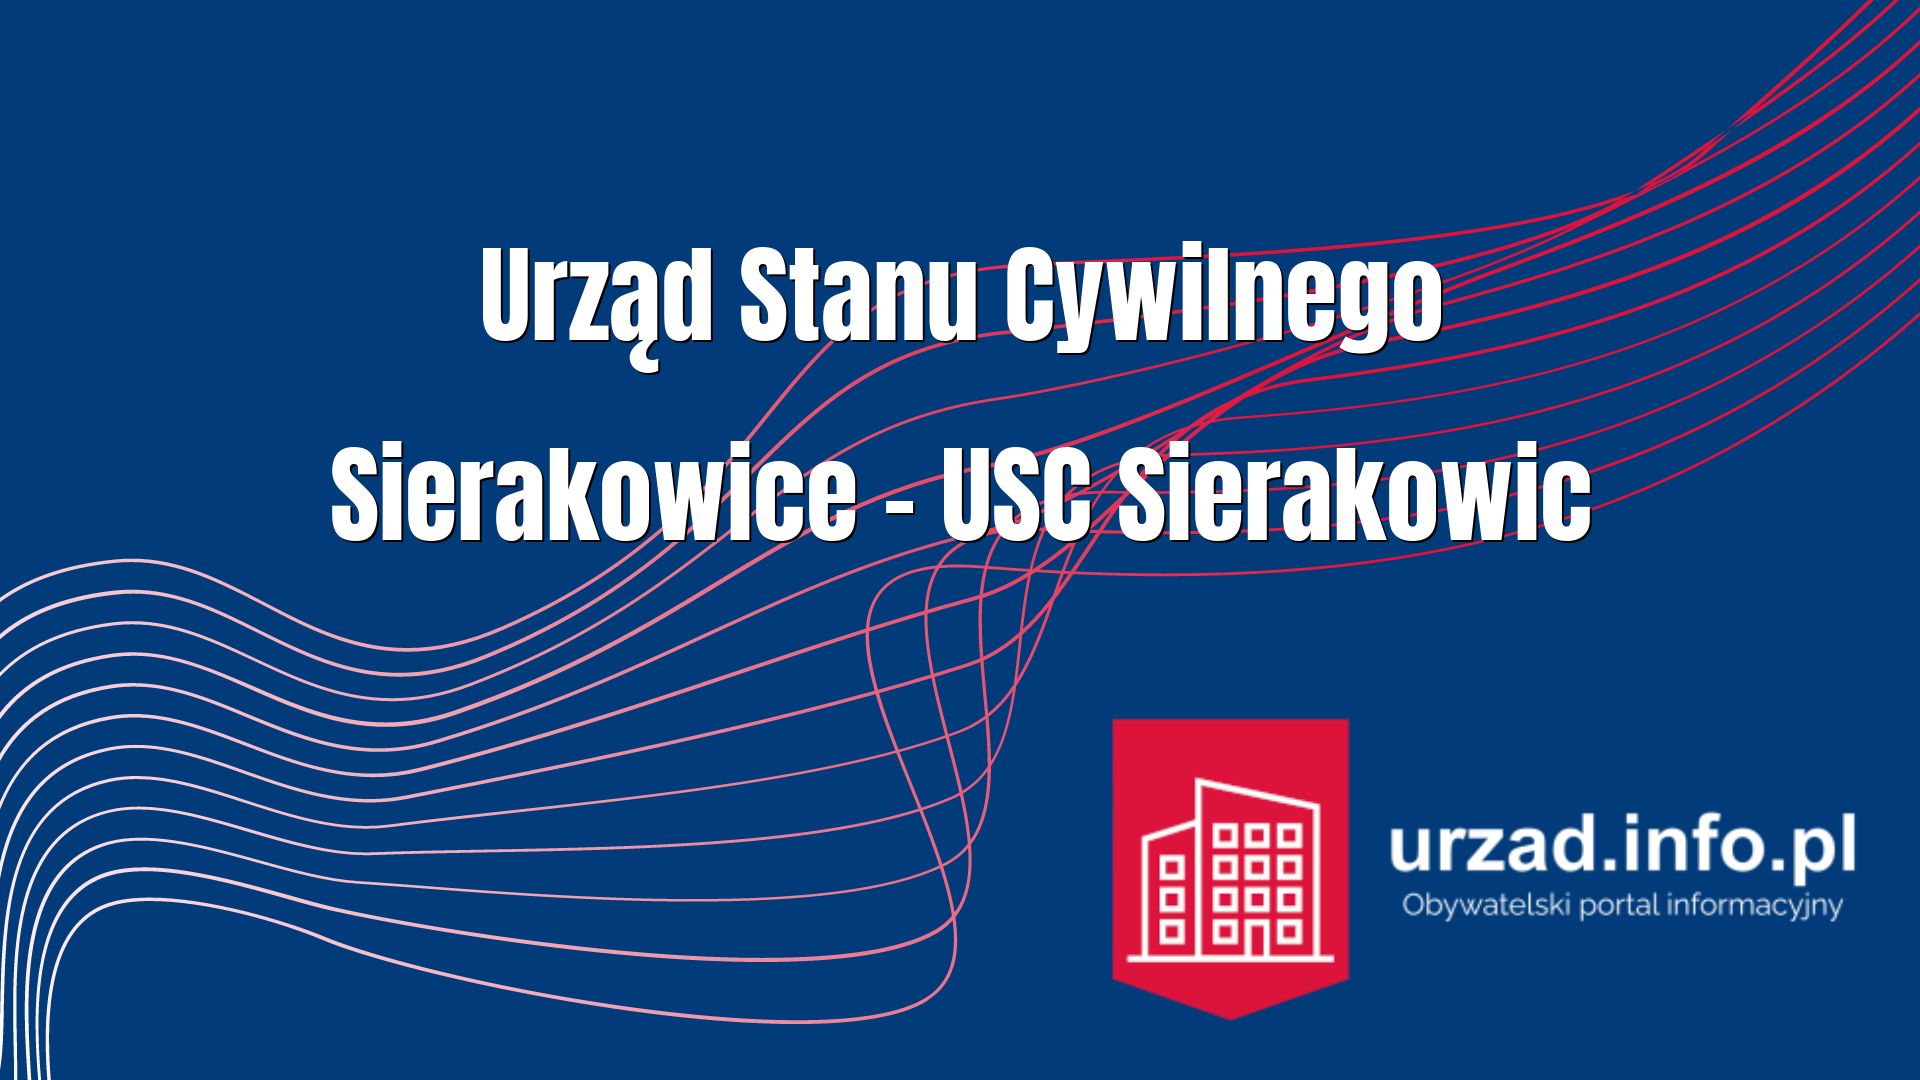 Urząd Stanu Cywilnego Sierakowice – USC Sierakowic